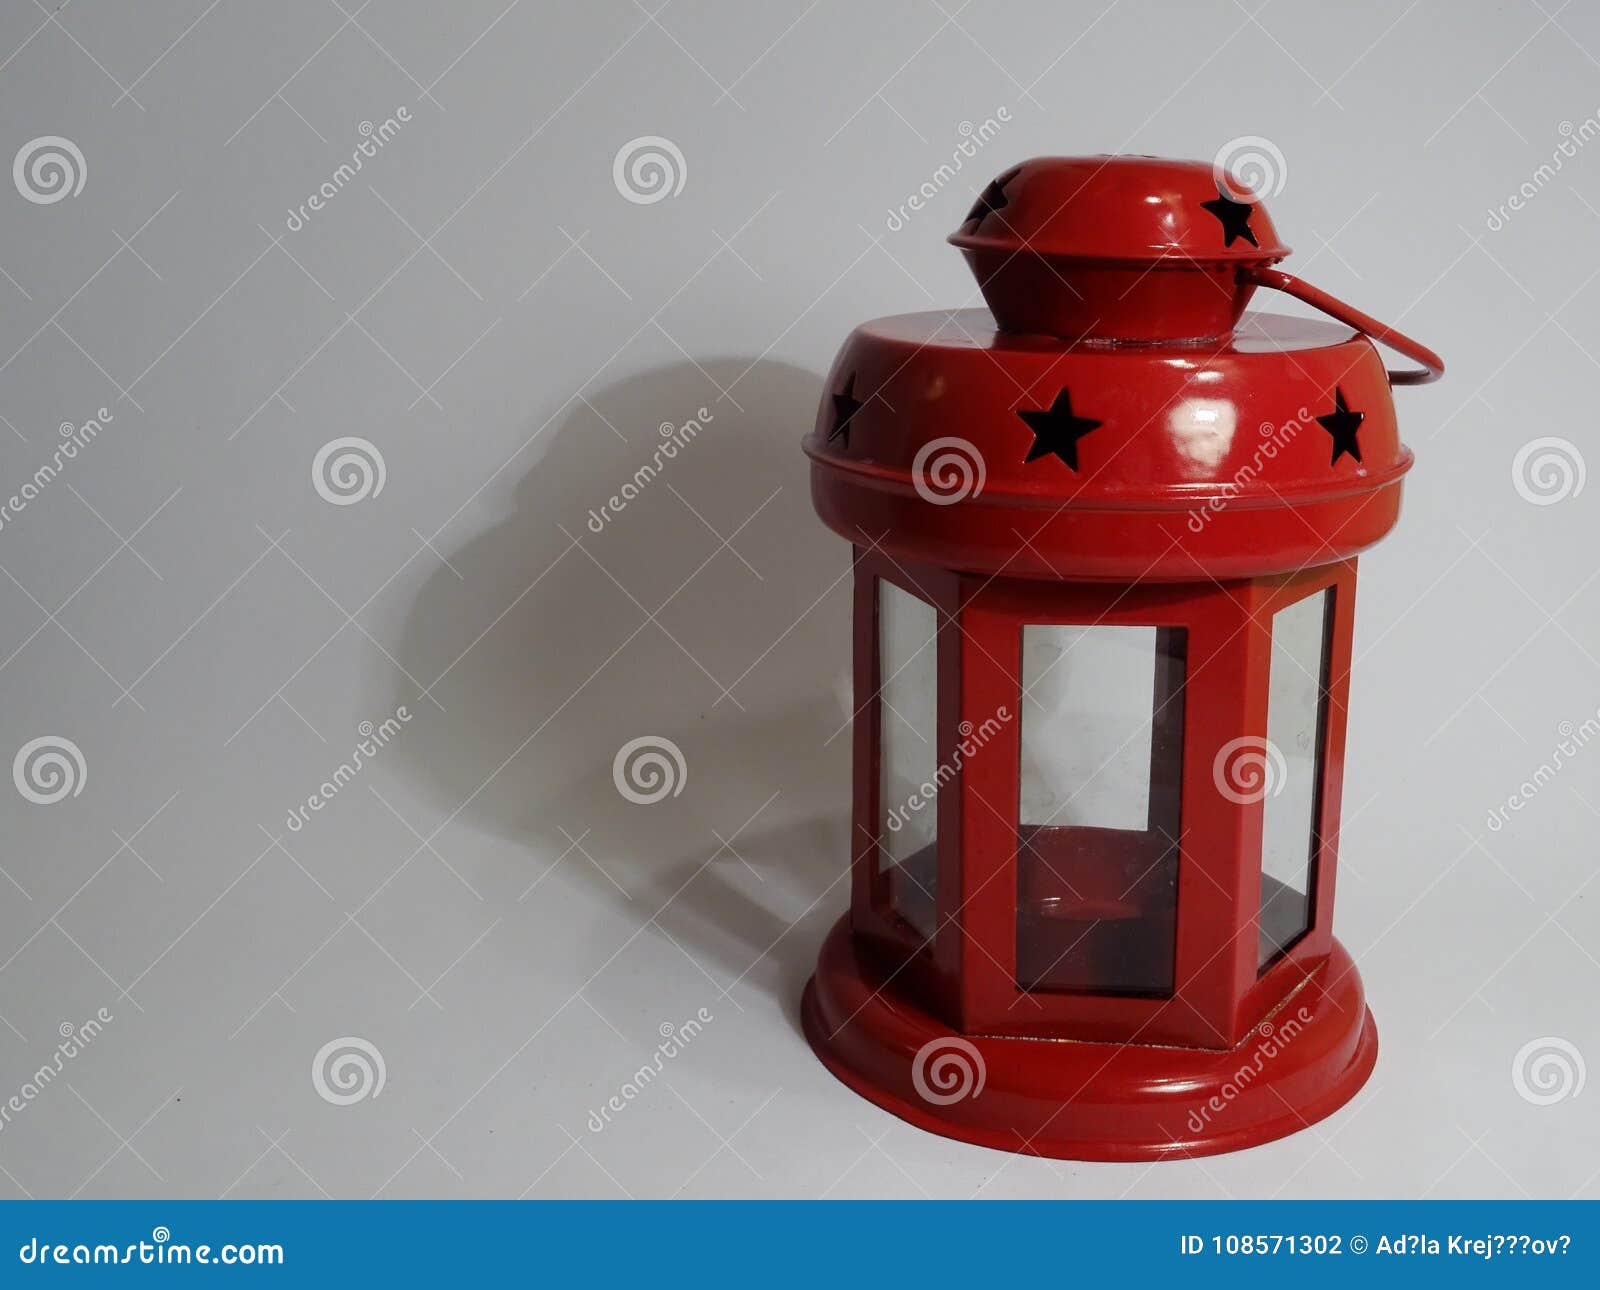 red lantern